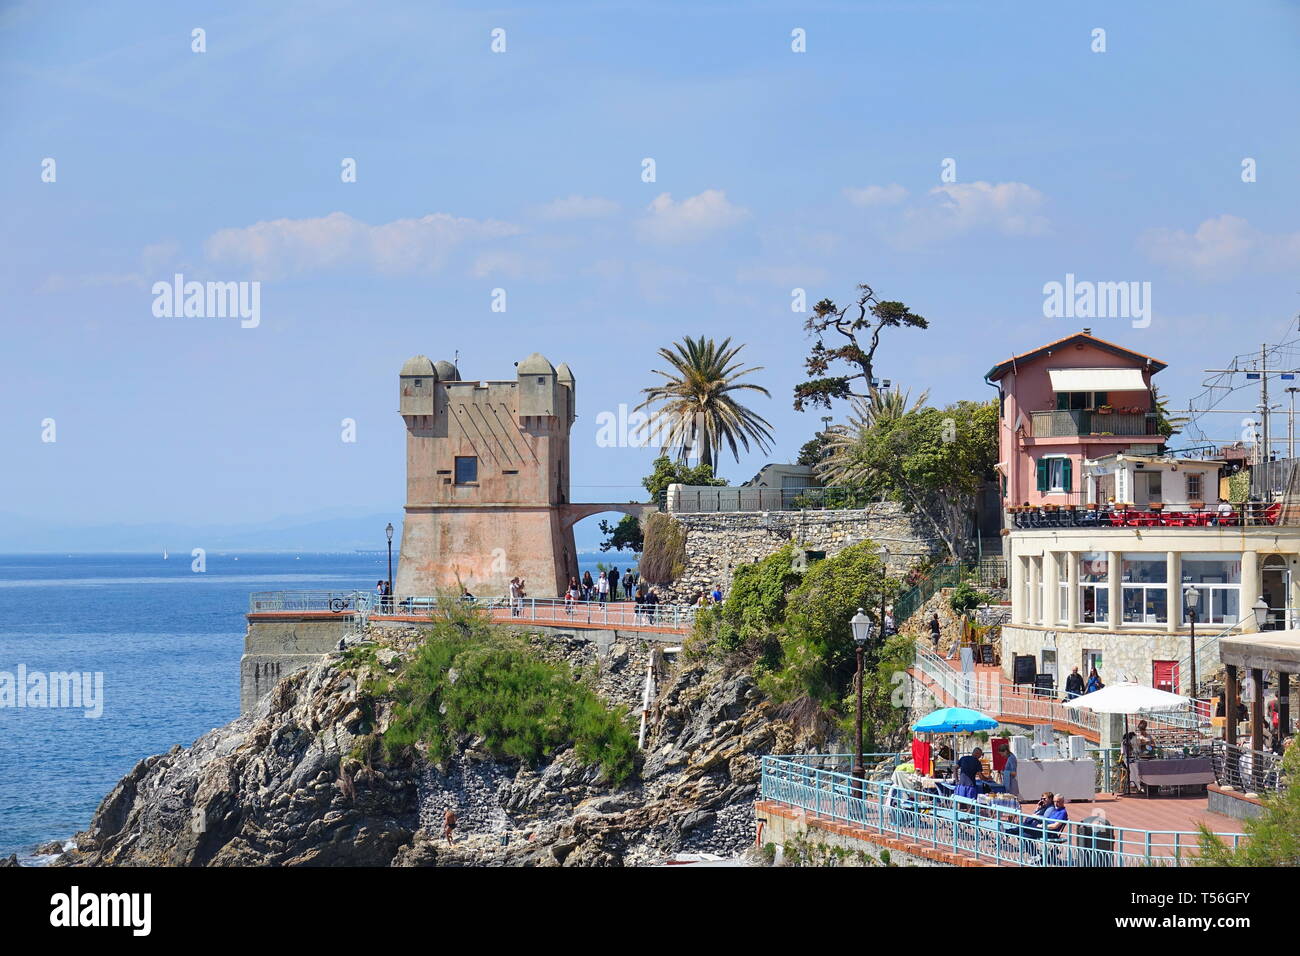 Panoramablick auf den Golf von Tigullio von der Strandpromenade an der felsigen Küste von Genua Nervi Gropallo mit dem mittelalterlichen Turm im 16. Jahrhunder t Stockfoto